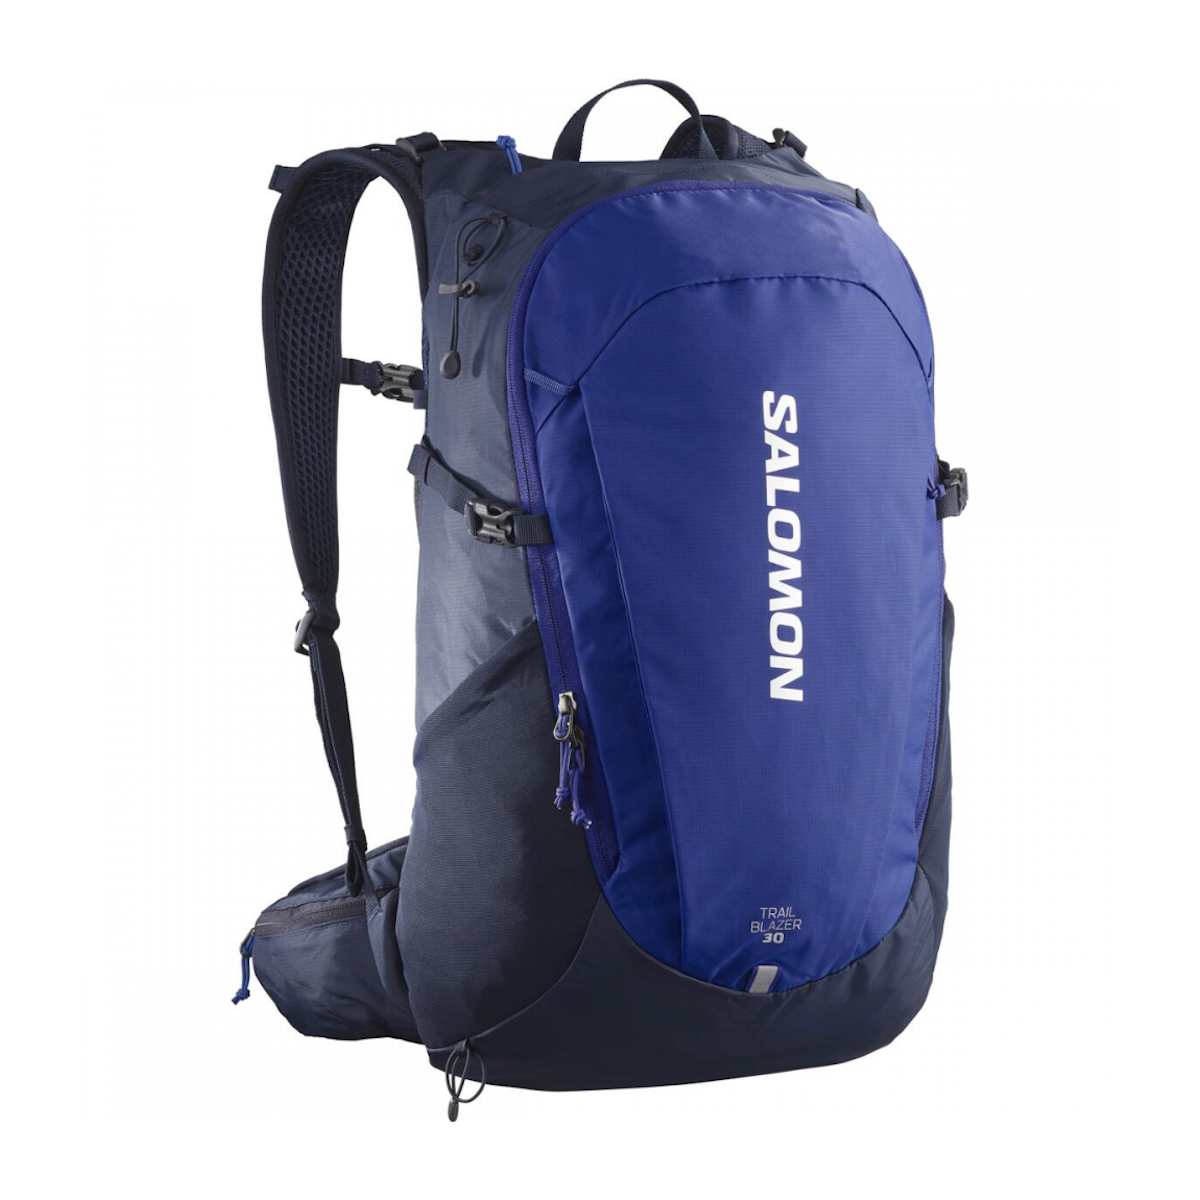 SALOMON TRAILBLAZER 30 backpack - blue/black